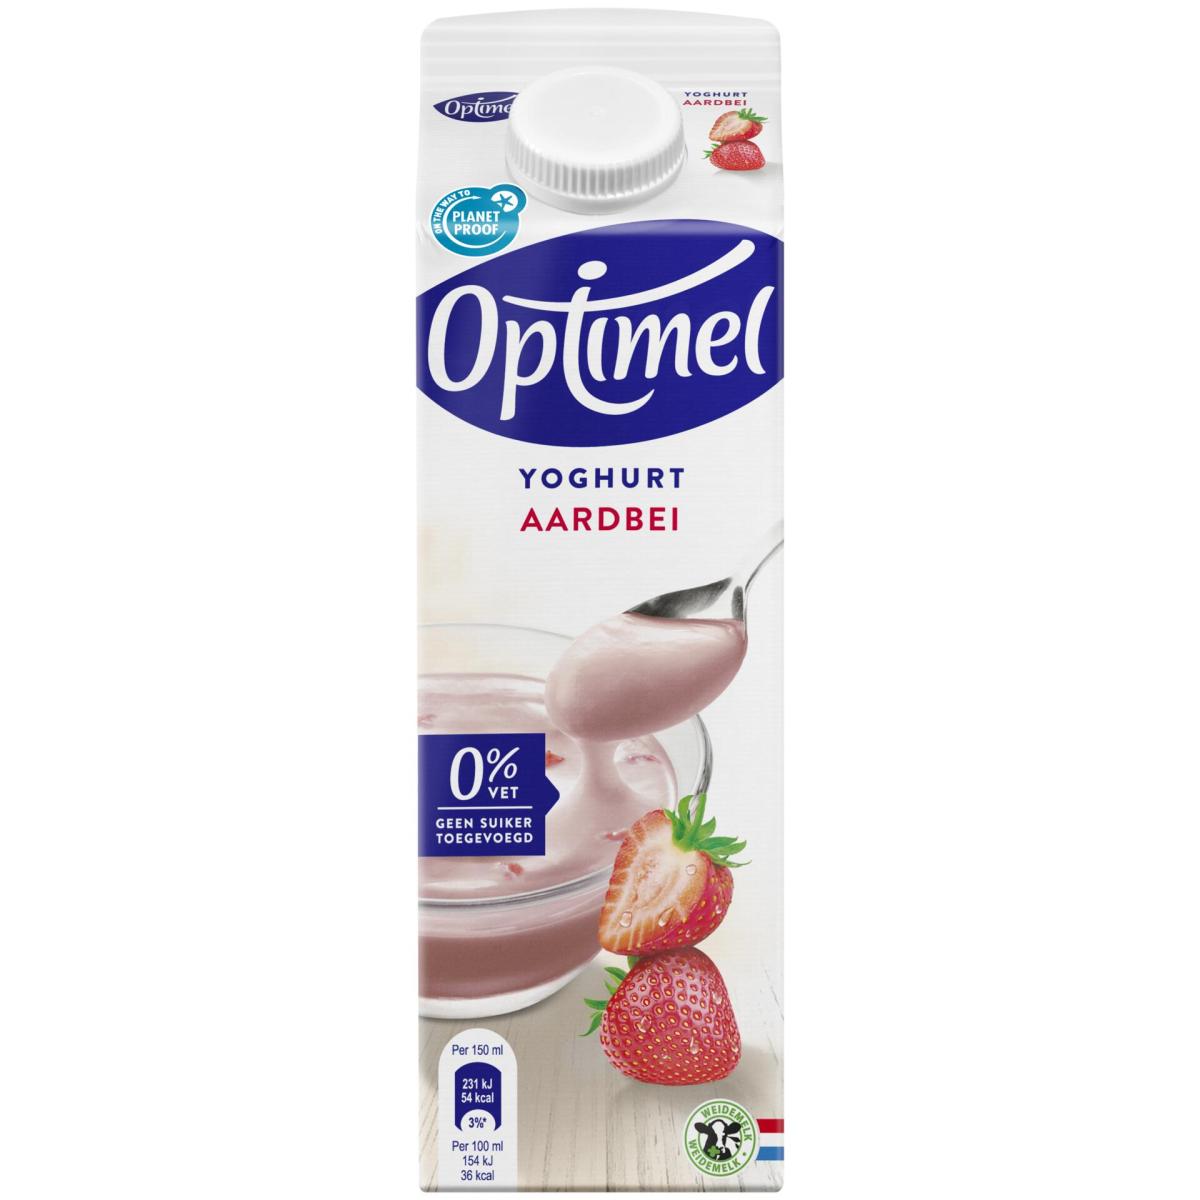 Optimel Magere yoghurt aardbei 0% vet 1L